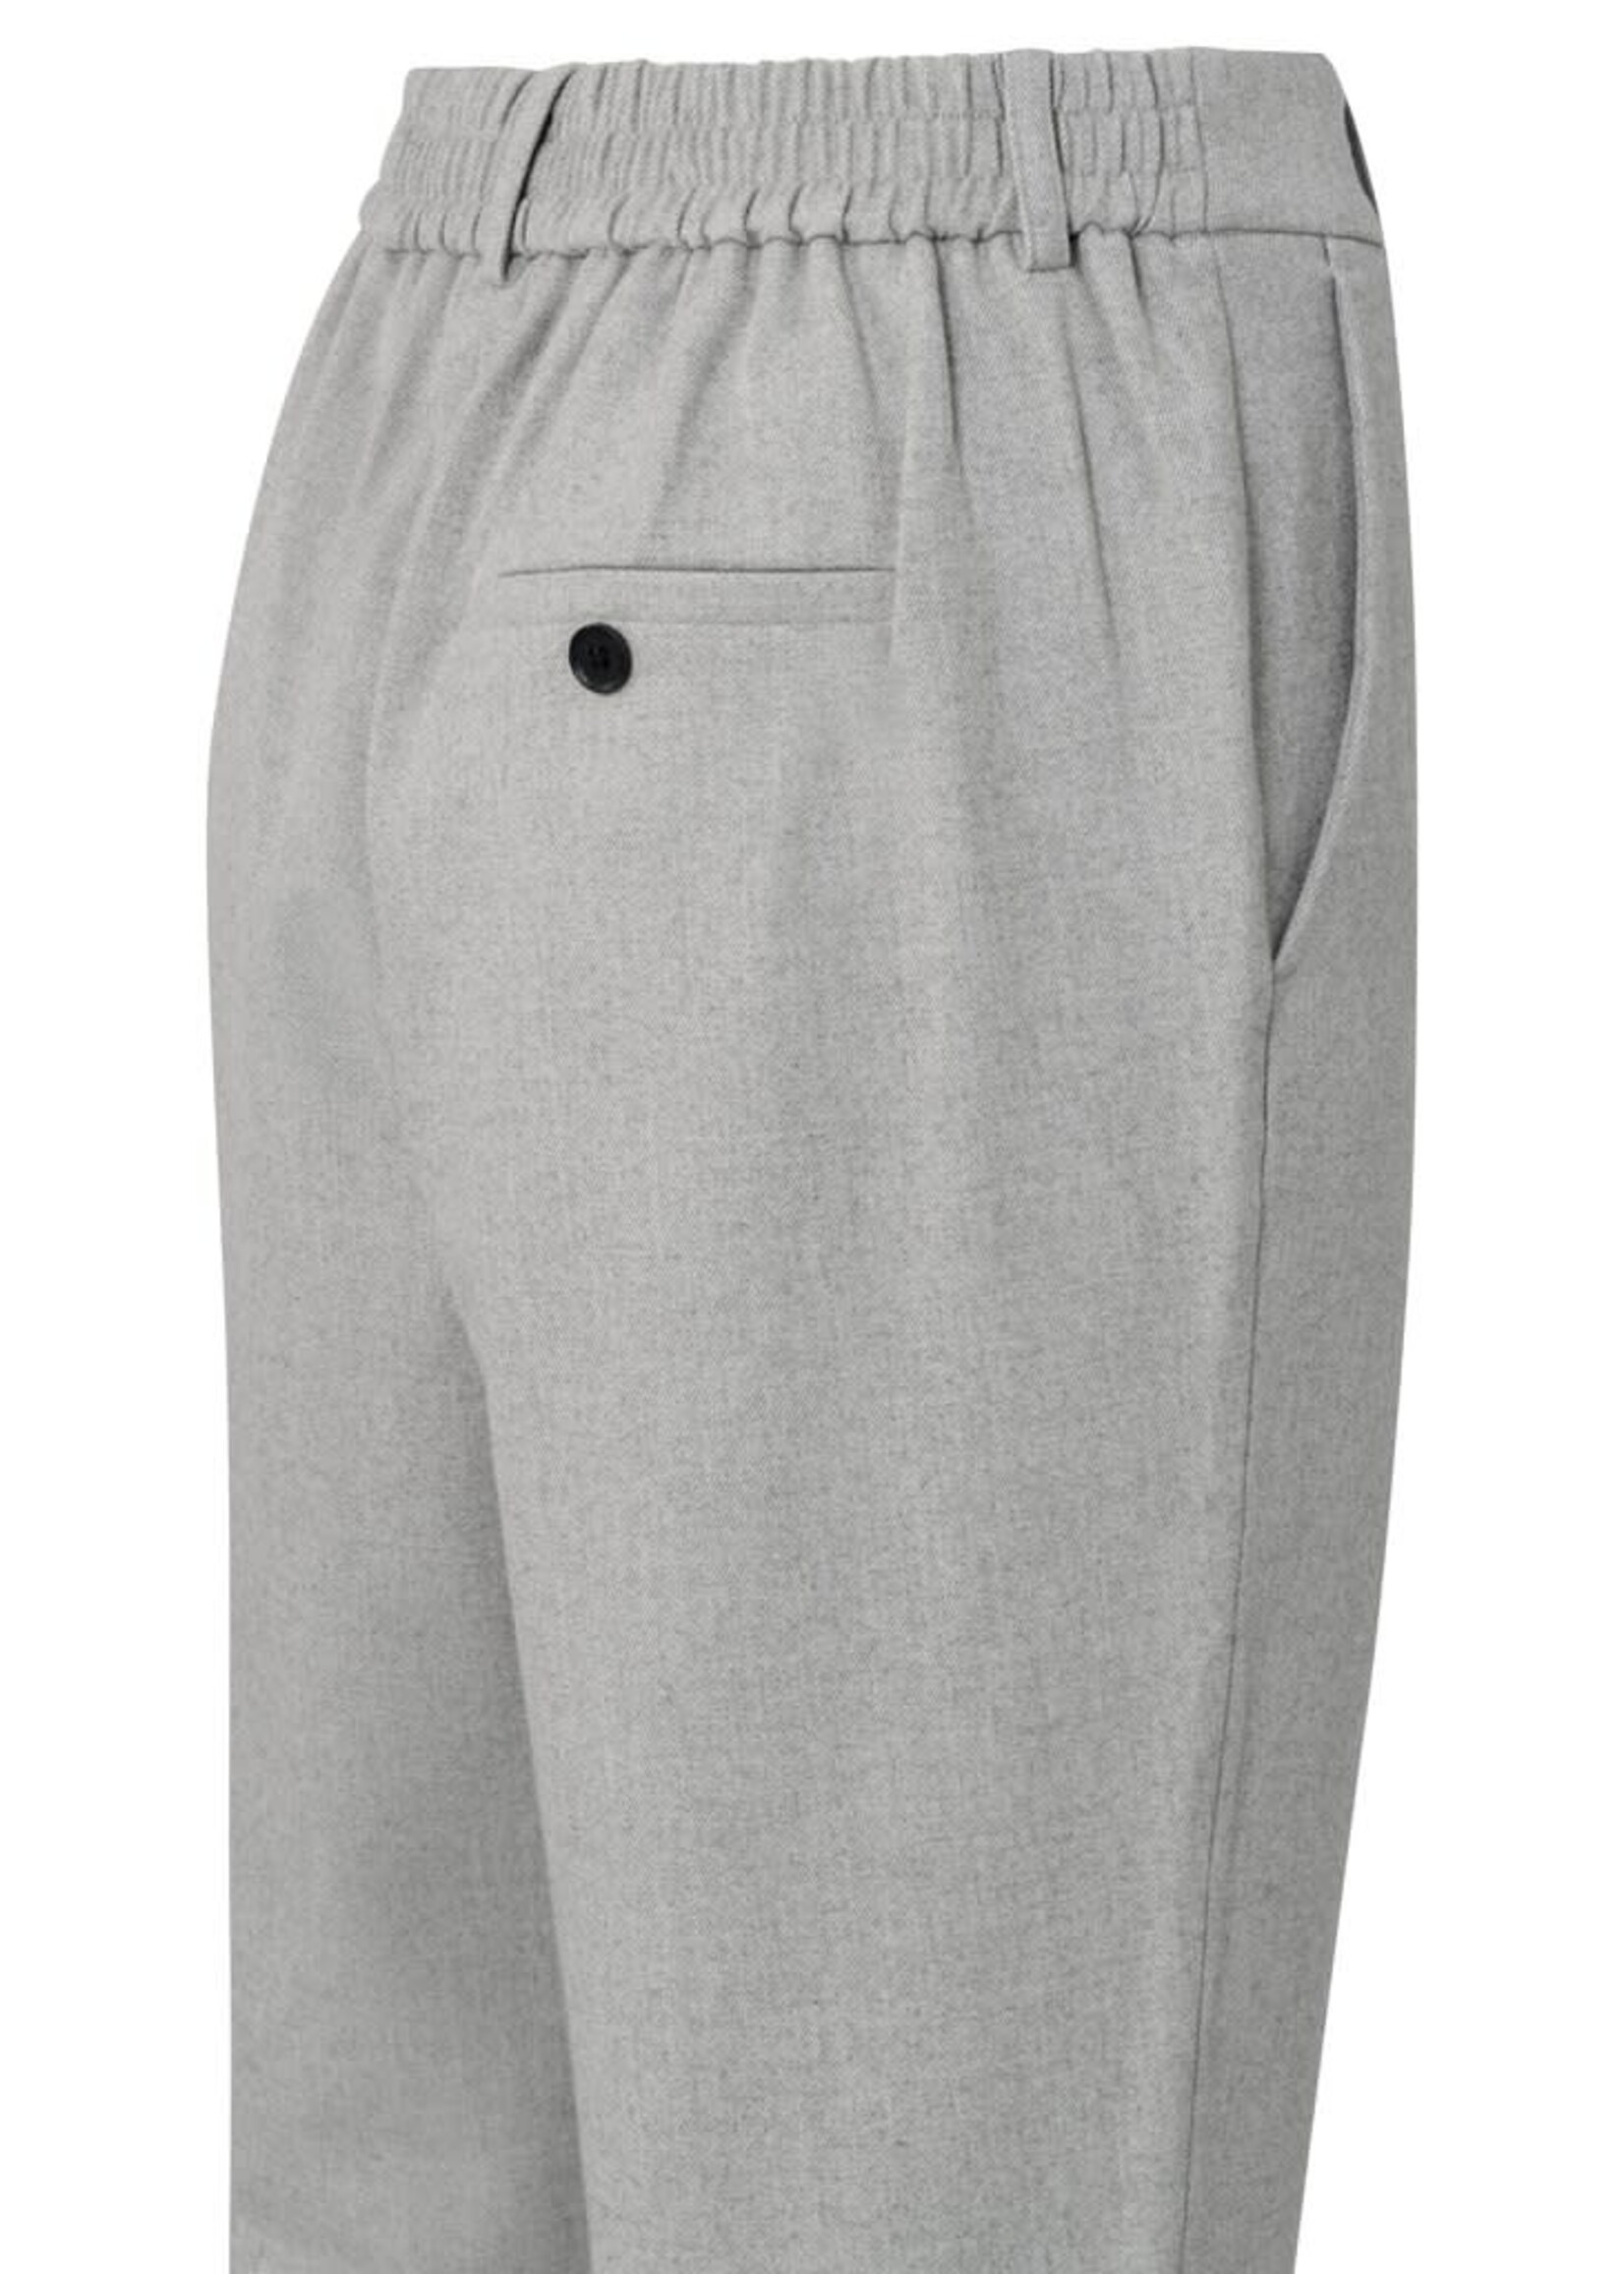 Yaya Yaya, Soft pantalon with straight leg, pockets and elastic waist, Mid Grey melange, Size: